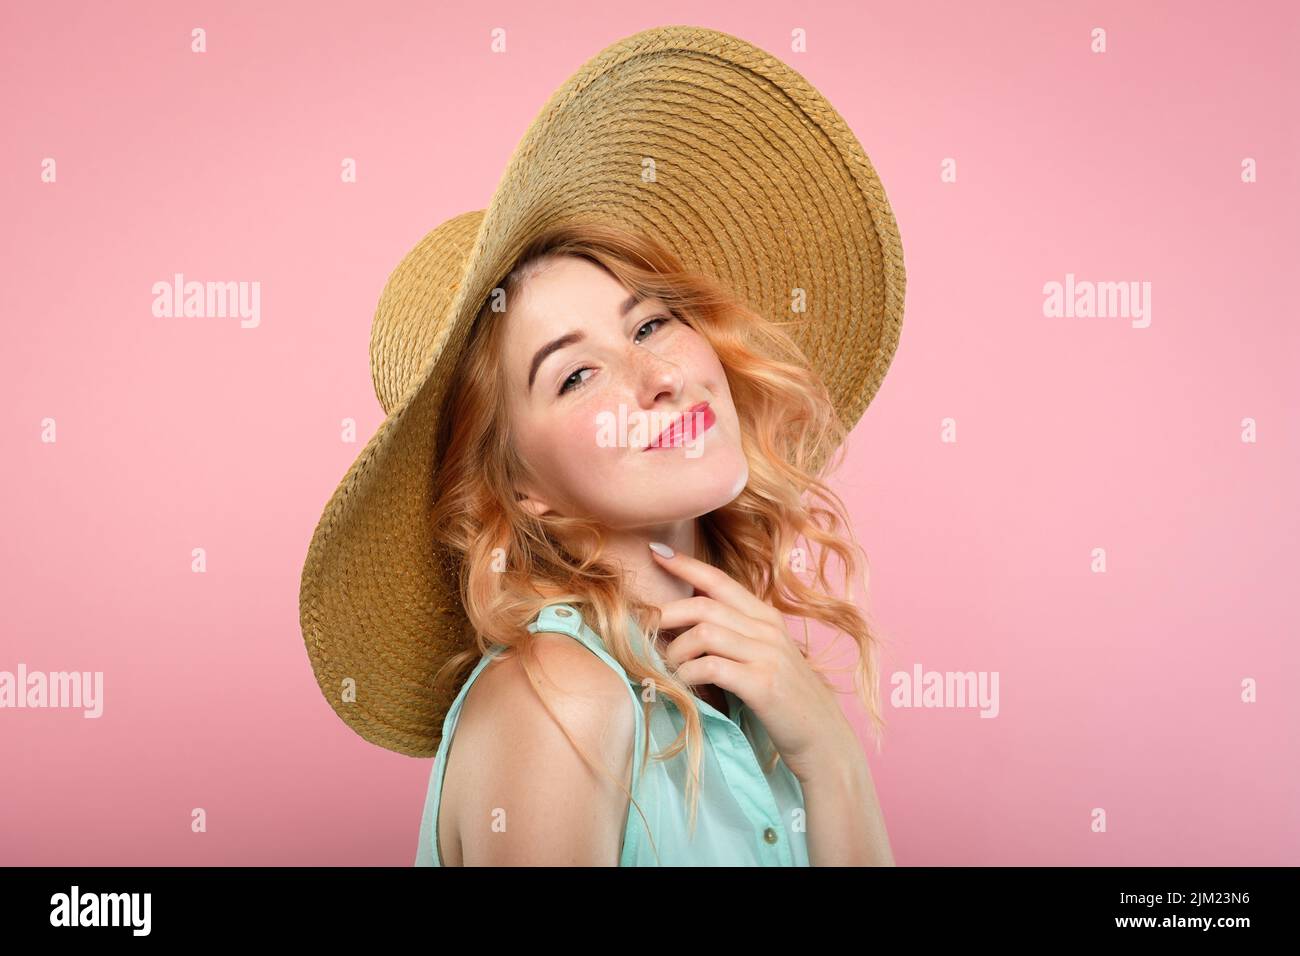 emozione felice ragazza eccitata beaming sorridere cappello Foto Stock